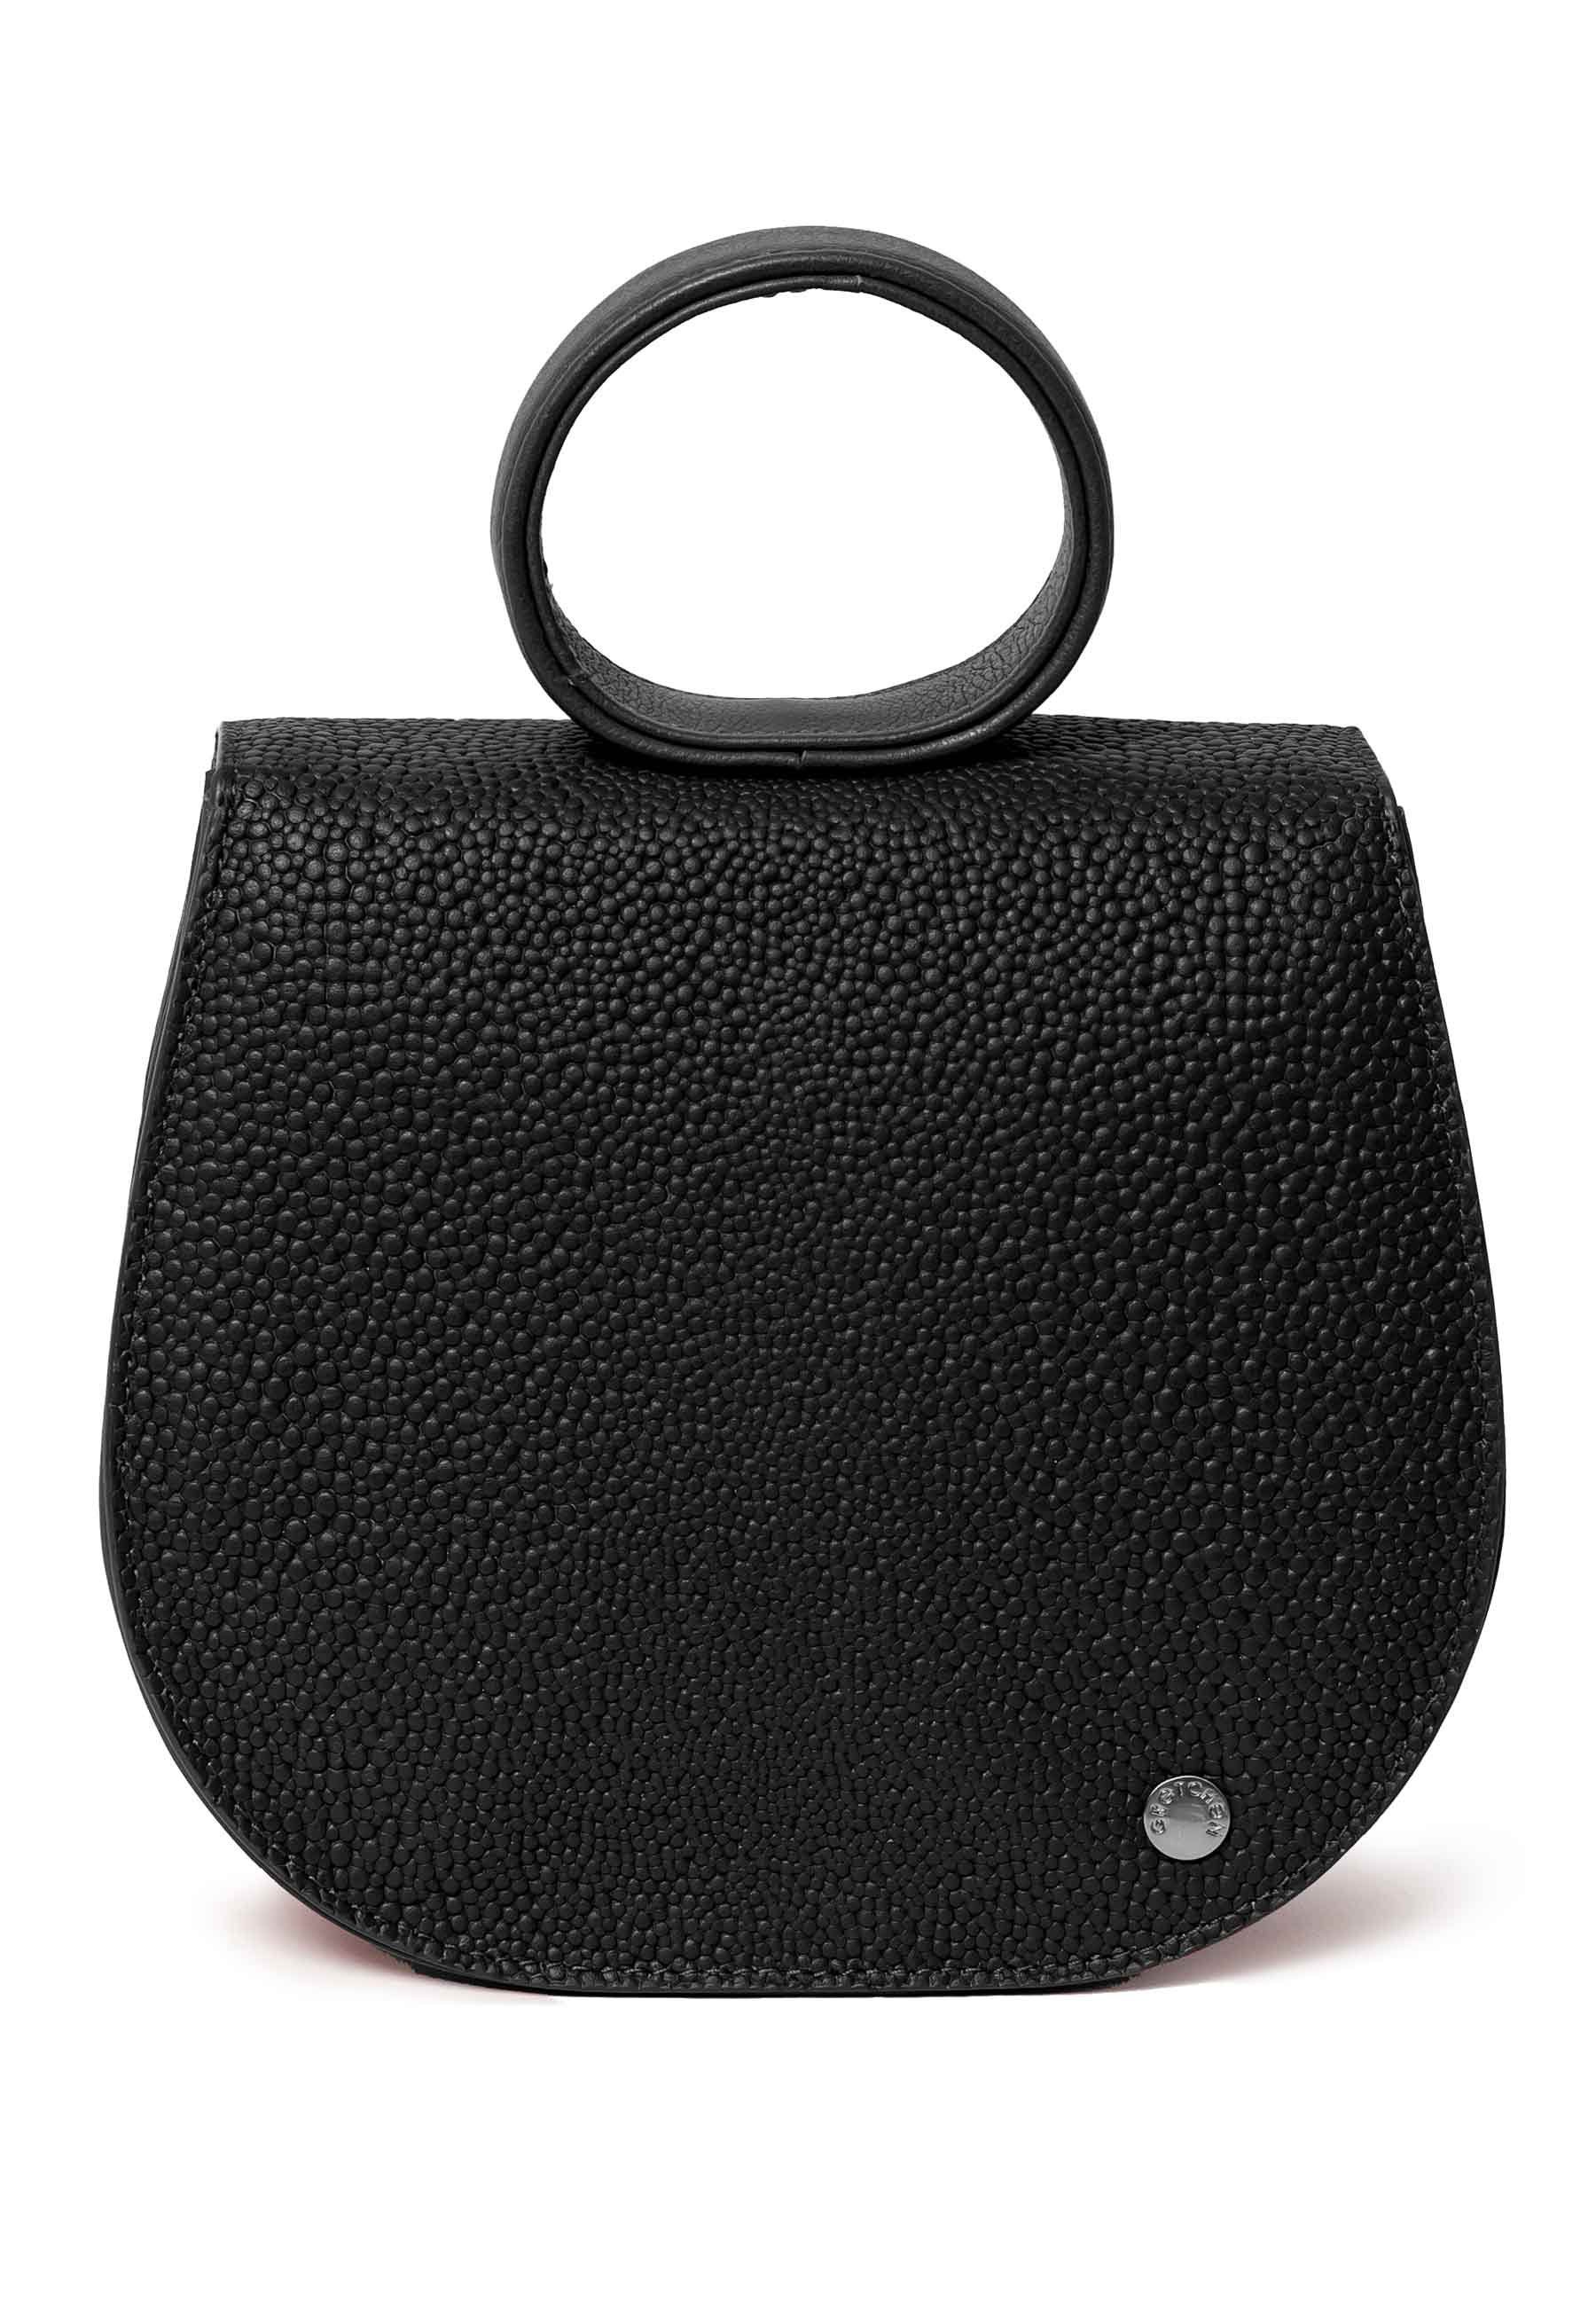 GRETCHEN Ebony Bag, Kalbsleder aus Mini schwarz-schwarz Loop Schultertasche italienischem